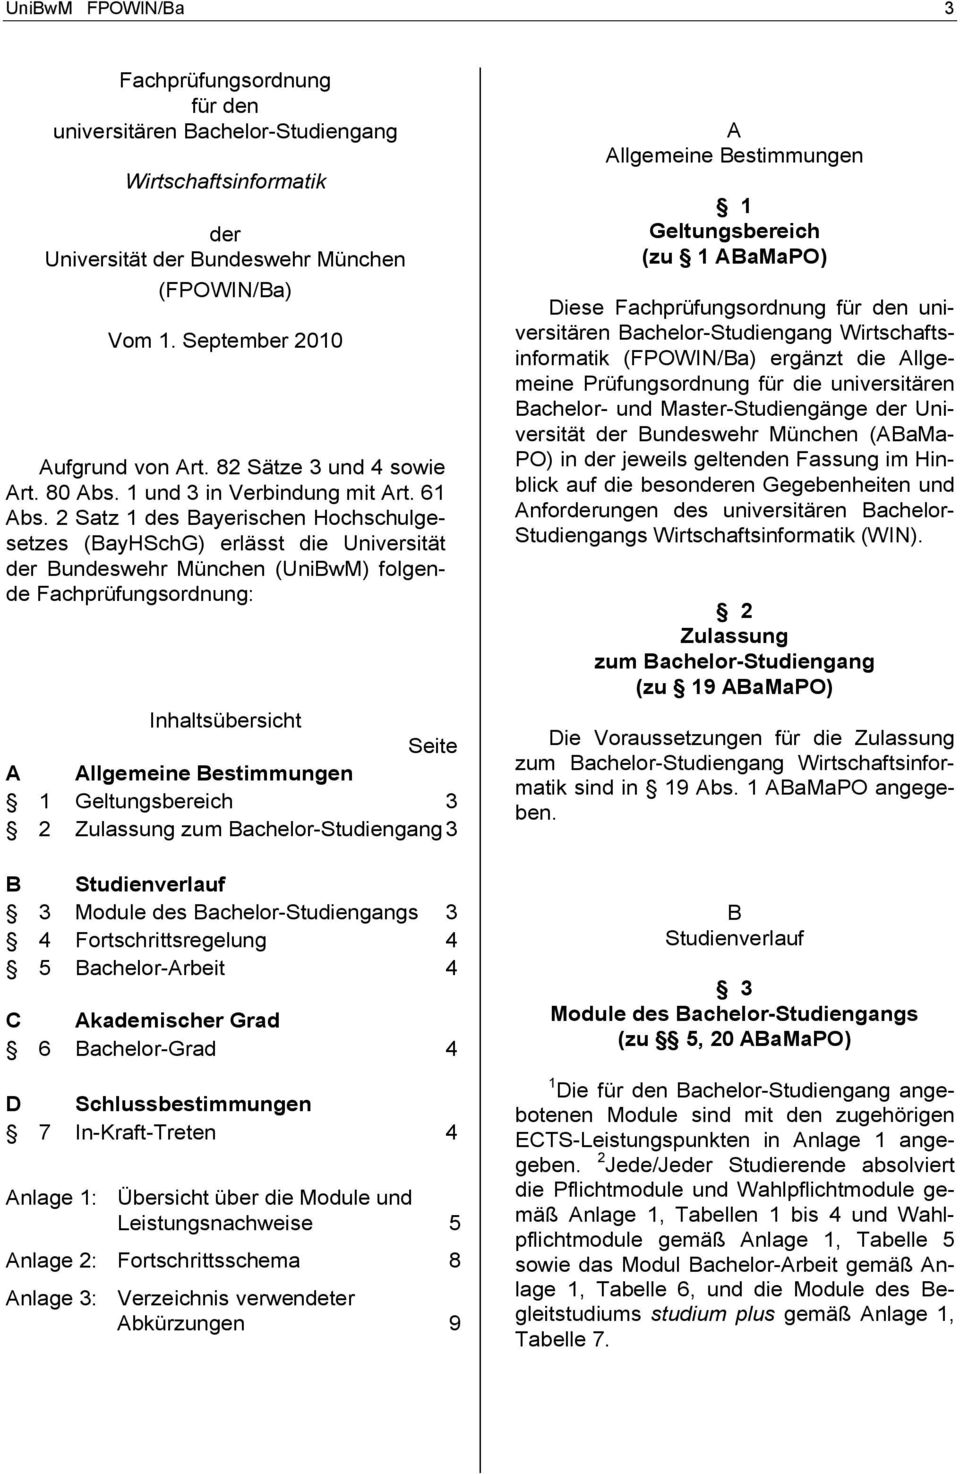 2 Satz 1 des Bayerischen Hochschulgesetzes (BayHSchG) erlässt die Universität der Bundeswehr München (UniBwM) folgende Fachprüfungsordnung: Inhaltsübersicht Seite A Allgemeine Bestimmungen 1